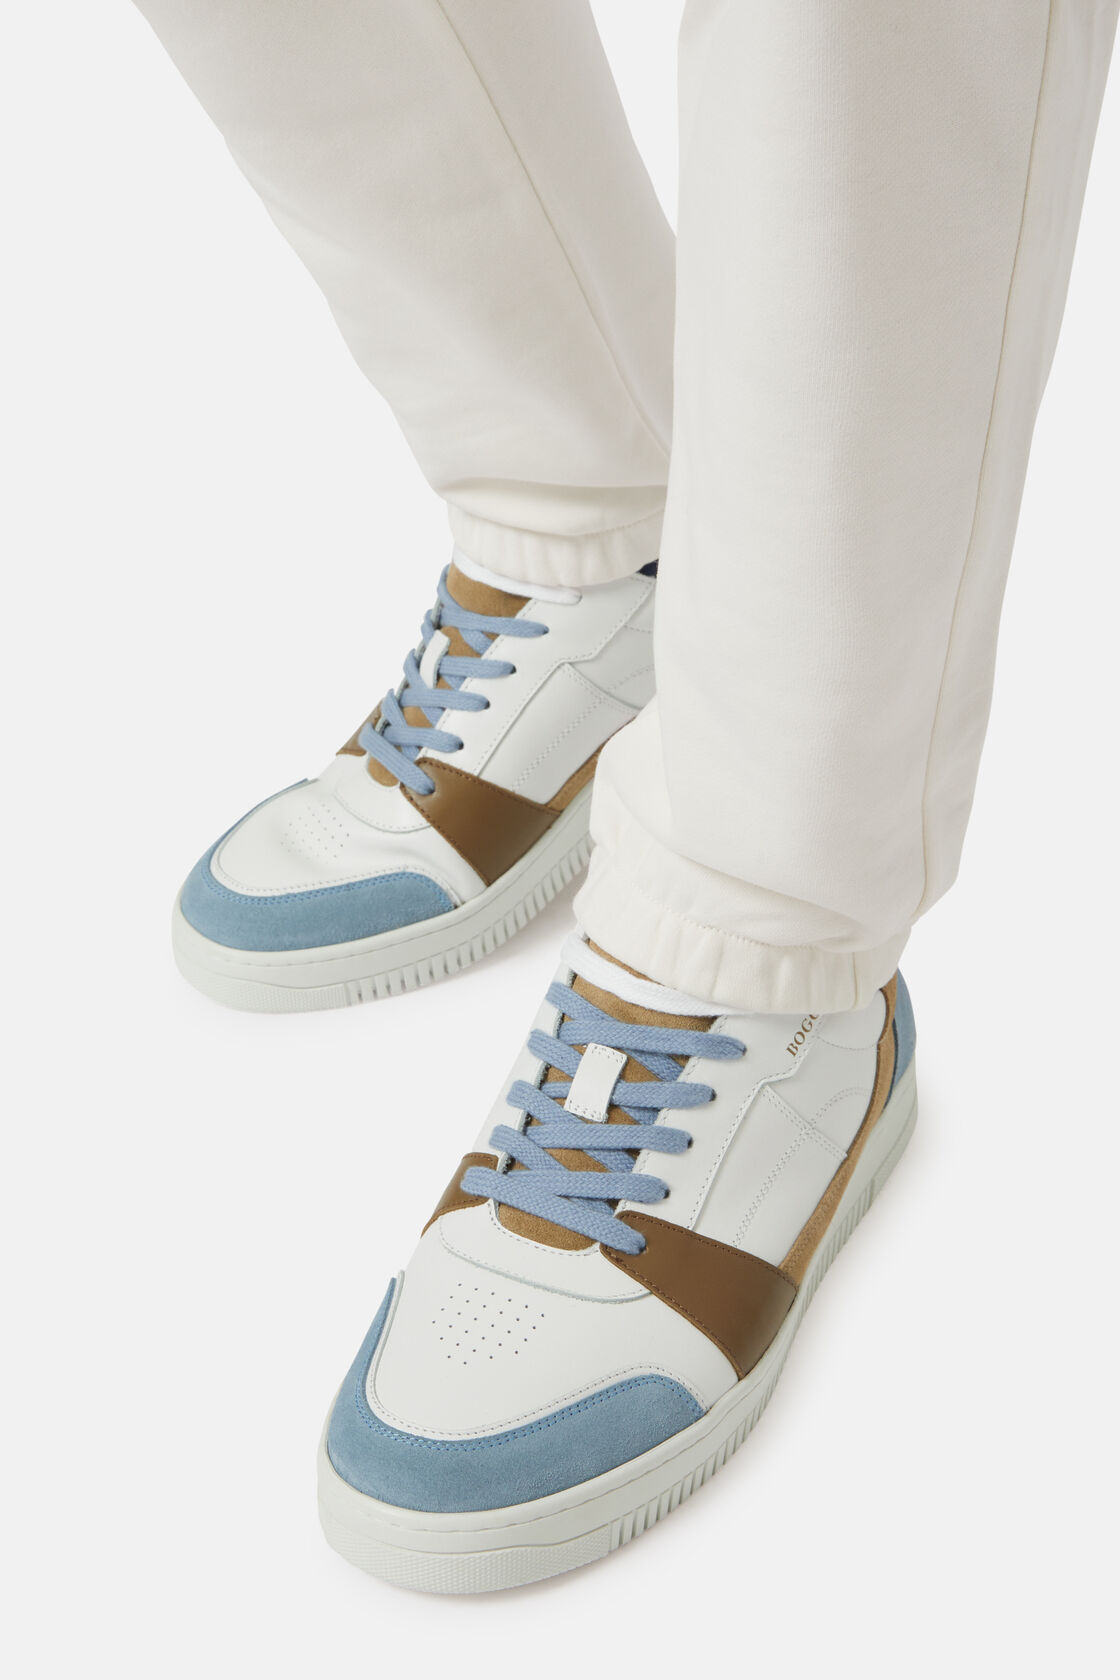 Δερμάτινα αθλητικά παπούτσια σε μπεζ και γαλάζιο, Medium Blue, hi-res